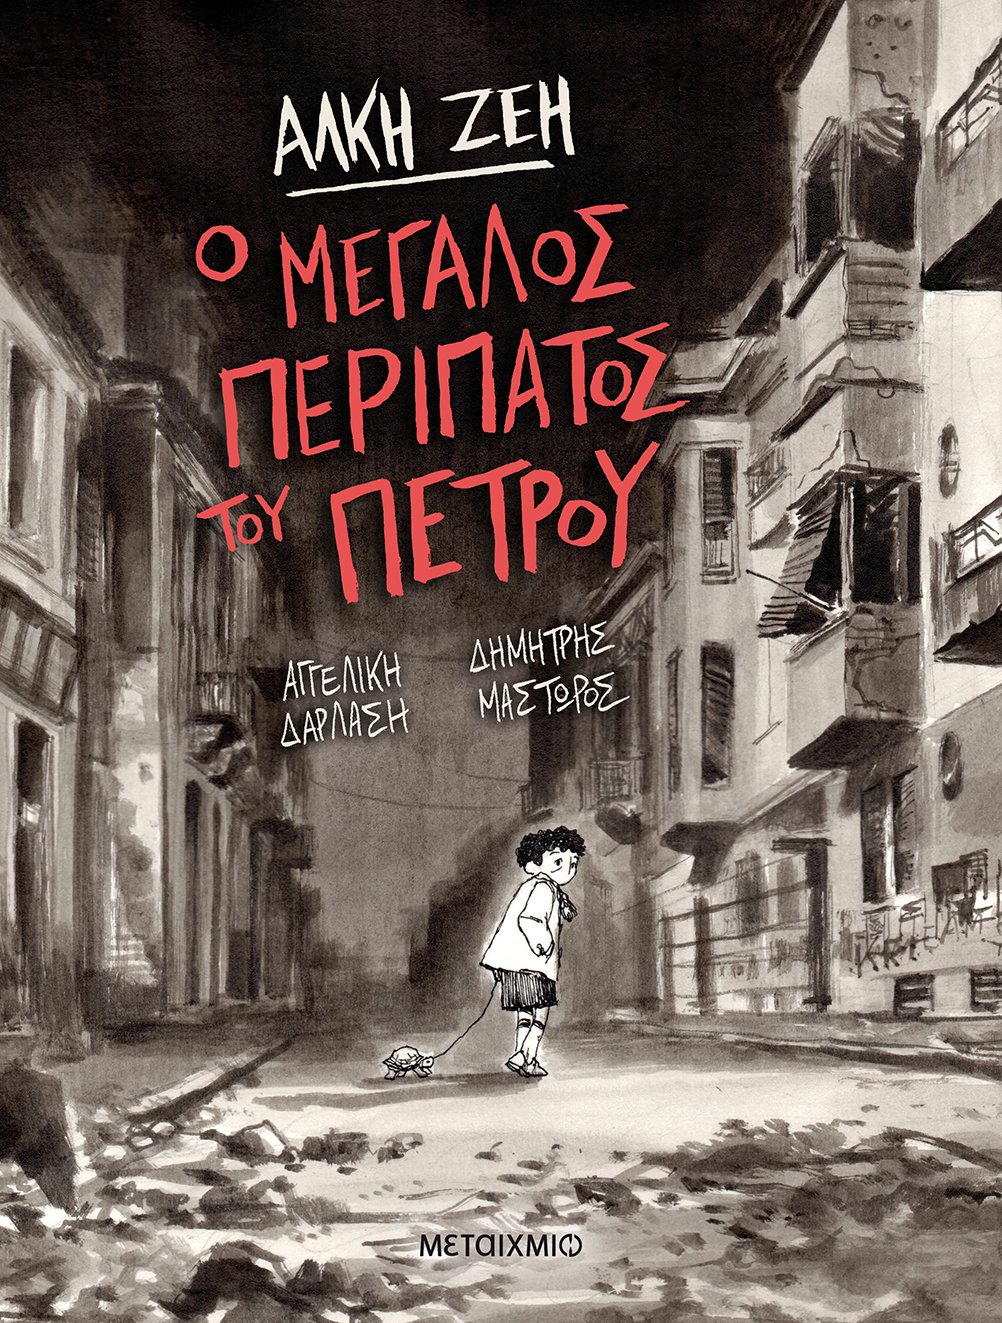 2020, Μαστώρος, Δημήτρης (), Ο μεγάλος περίπατος του Πέτρου, , Ζέη, Άλκη, 1923-2020, Μεταίχμιο